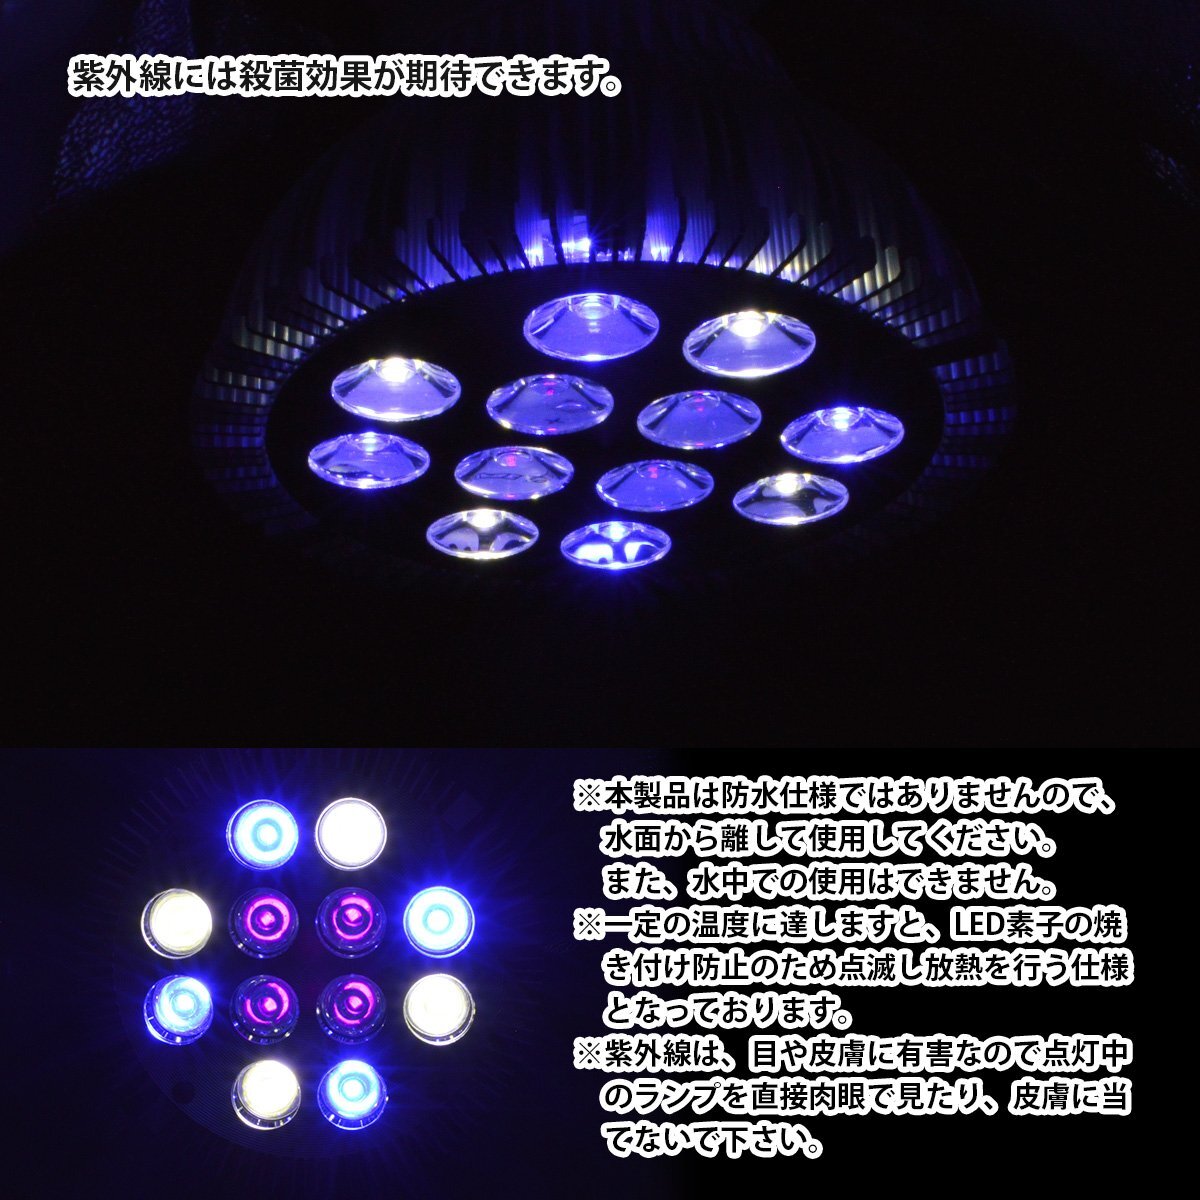 [青4/白4/紫外線4] 24W(2W×12) 電球 E26 口金 水槽 用 照明 植物育成 スポット ライト 12LED アクアリウム 電球 水草_画像4